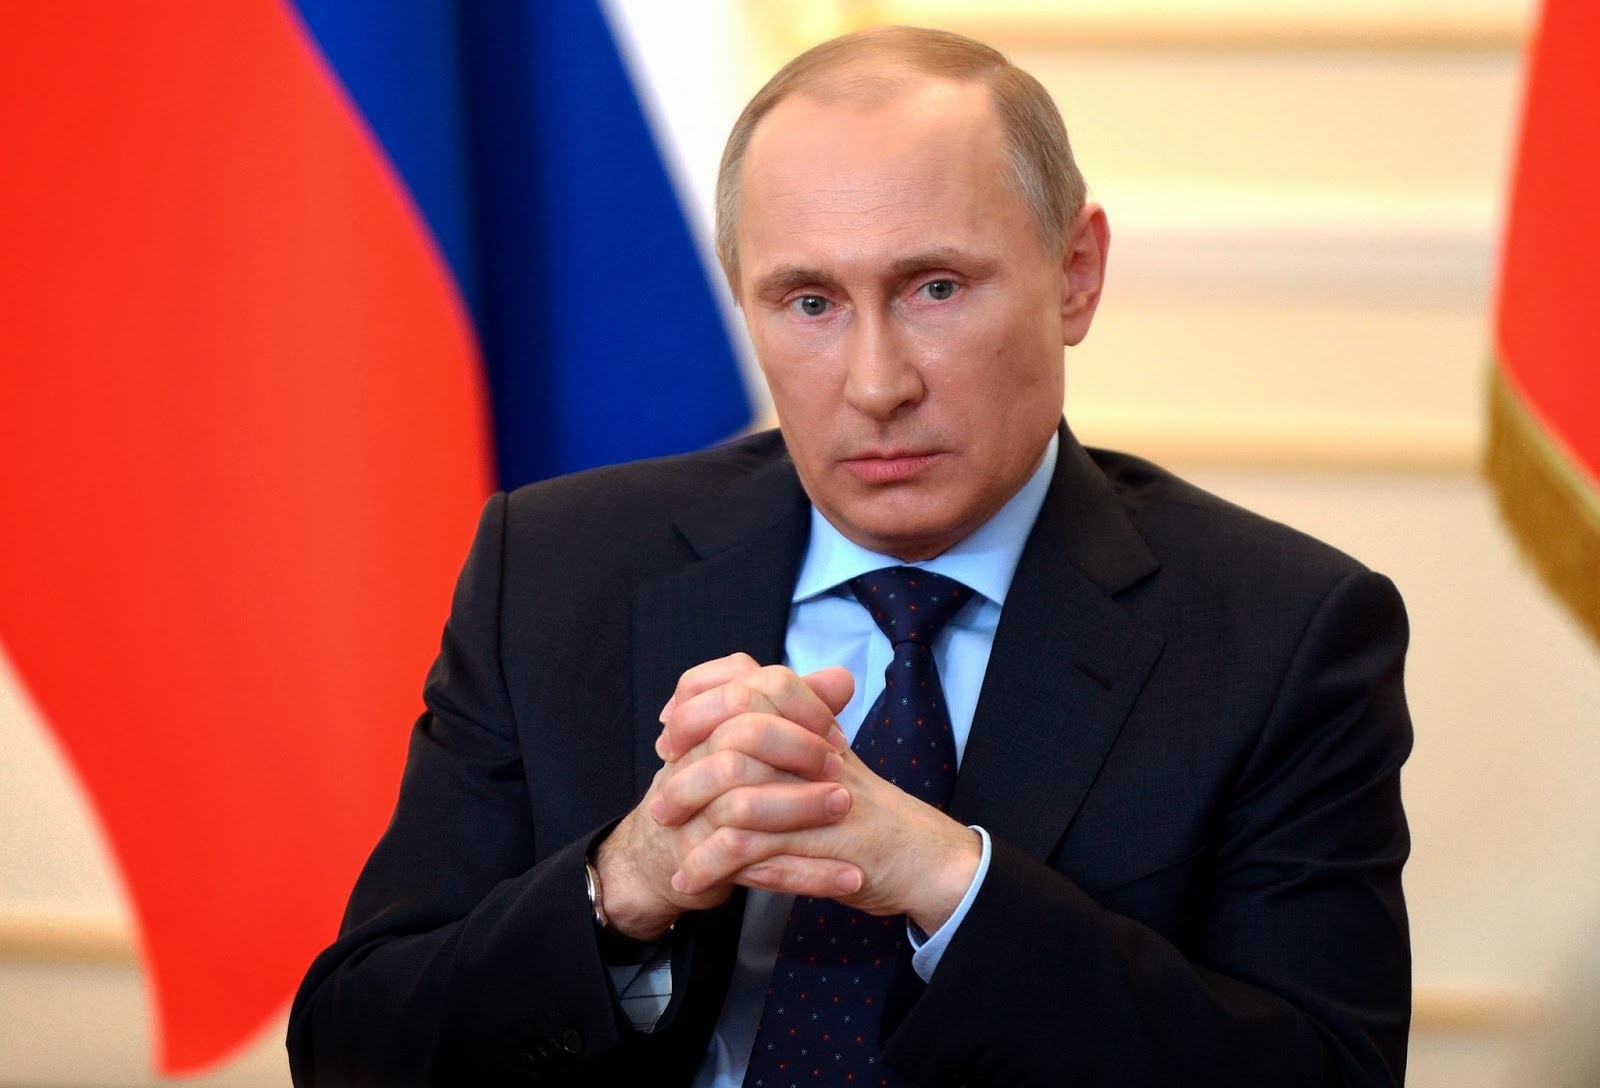 Путин: Попытки разговаривать с Москвой на языке ультиматумов бесперспективны